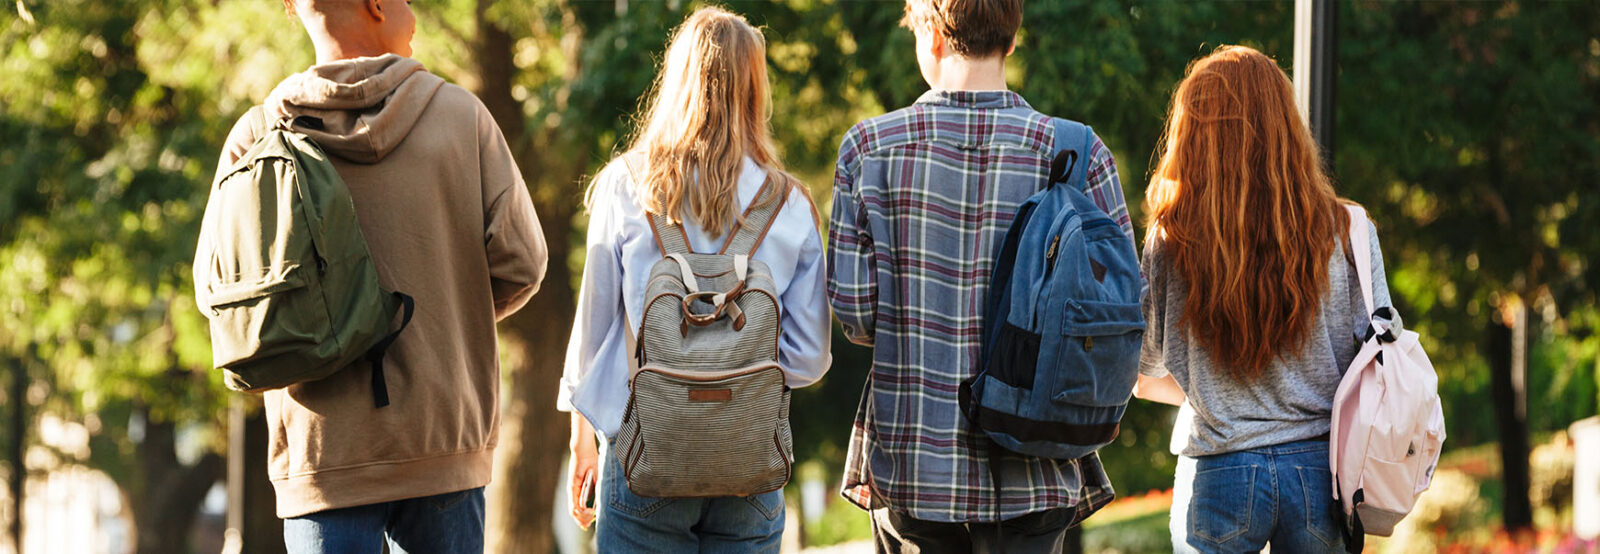 Das Foto zeigt vier Jugendliche von hinten, die auf einem Weg im Park laufen. Es sind zwei Jungen und zwei Mädchen in legerer Kleidung und mit Rücksäcken.